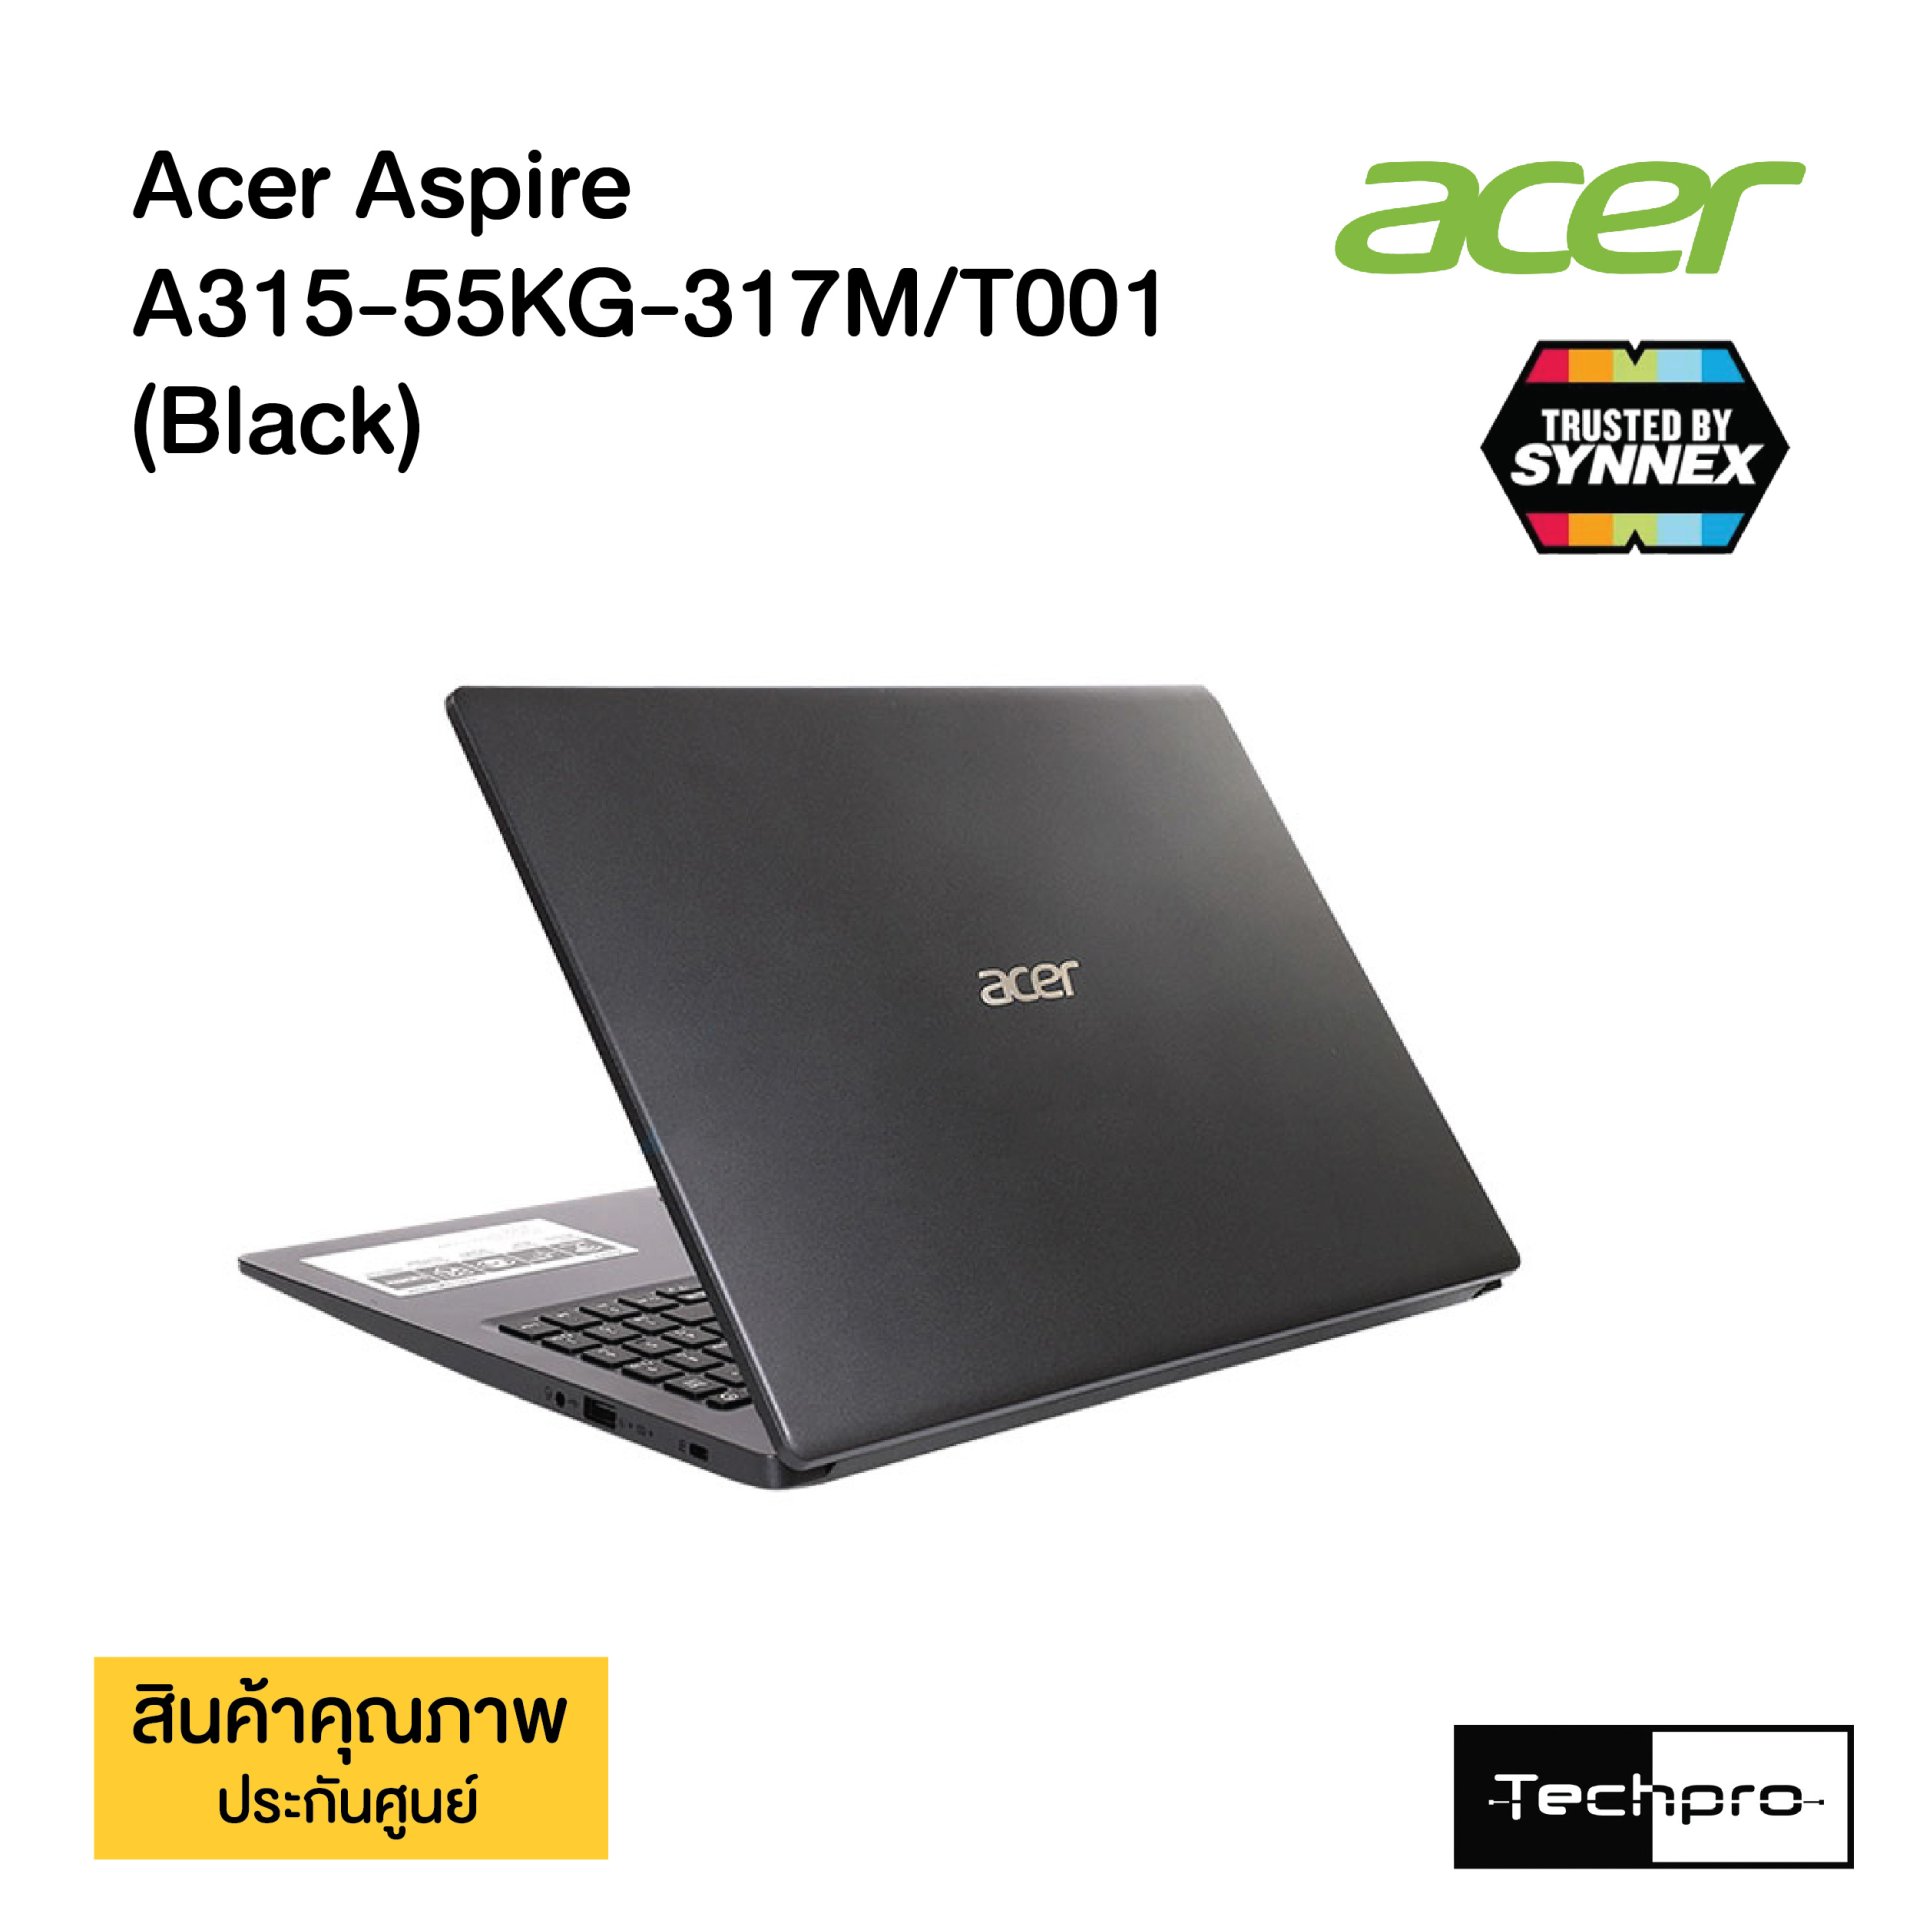 Acer Aspire A315-55KG-317M/T001 (Black) - techpro